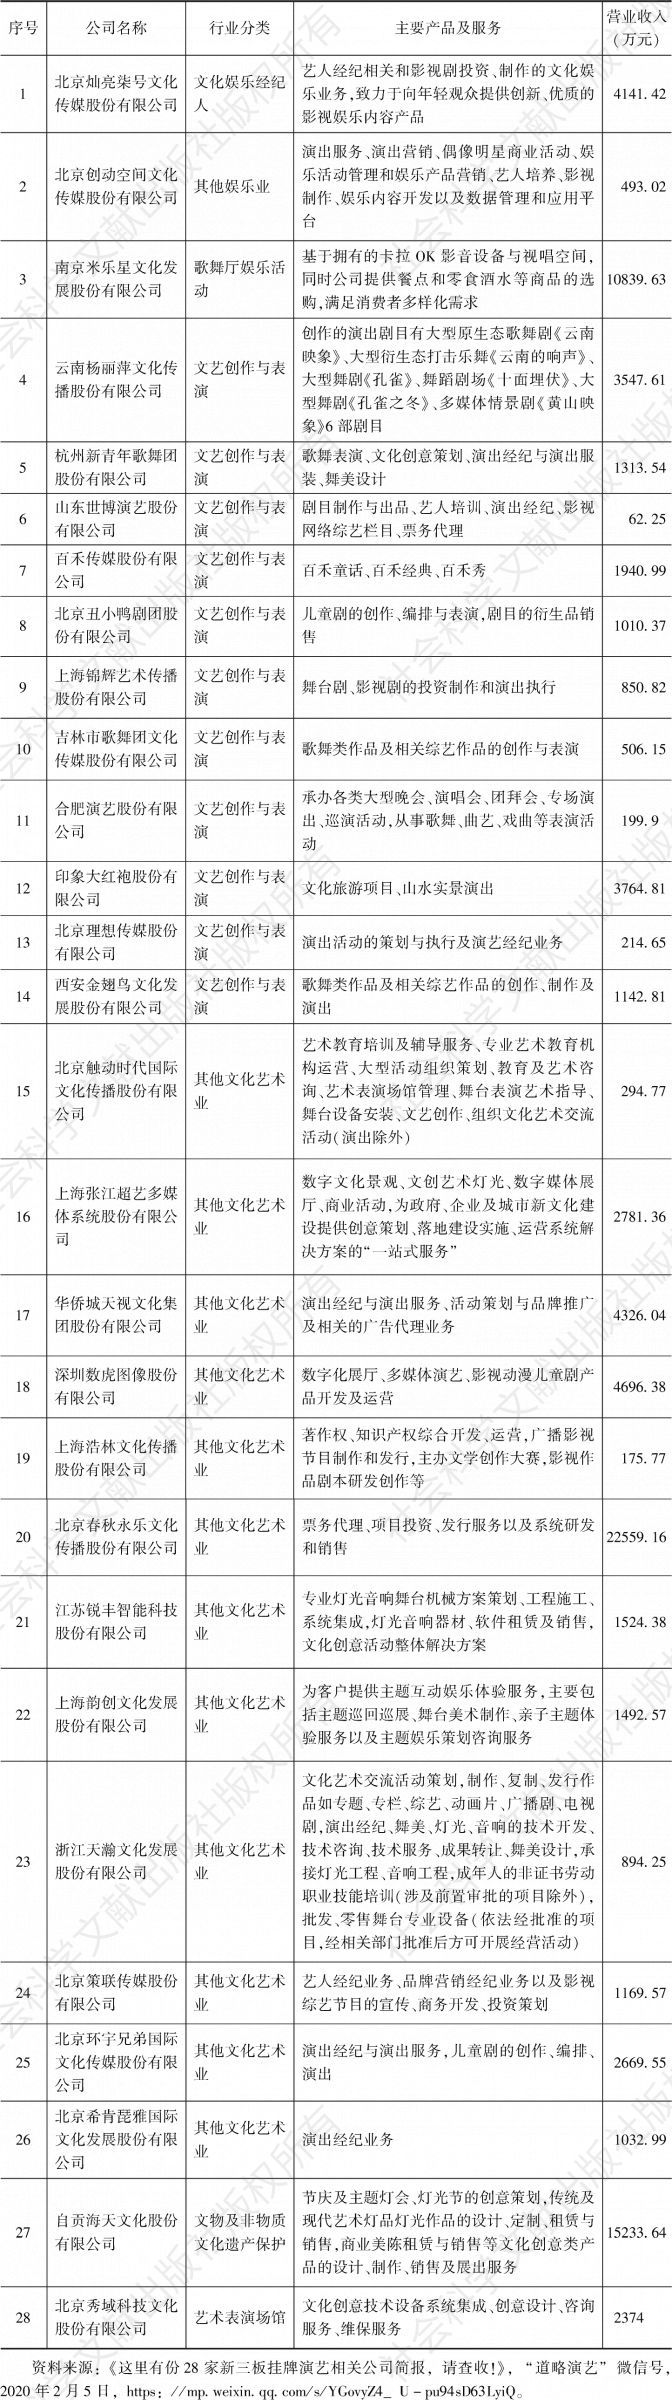 表1 2019年上半年在中国新三板上市的28家演艺及相关企业营业收入情况